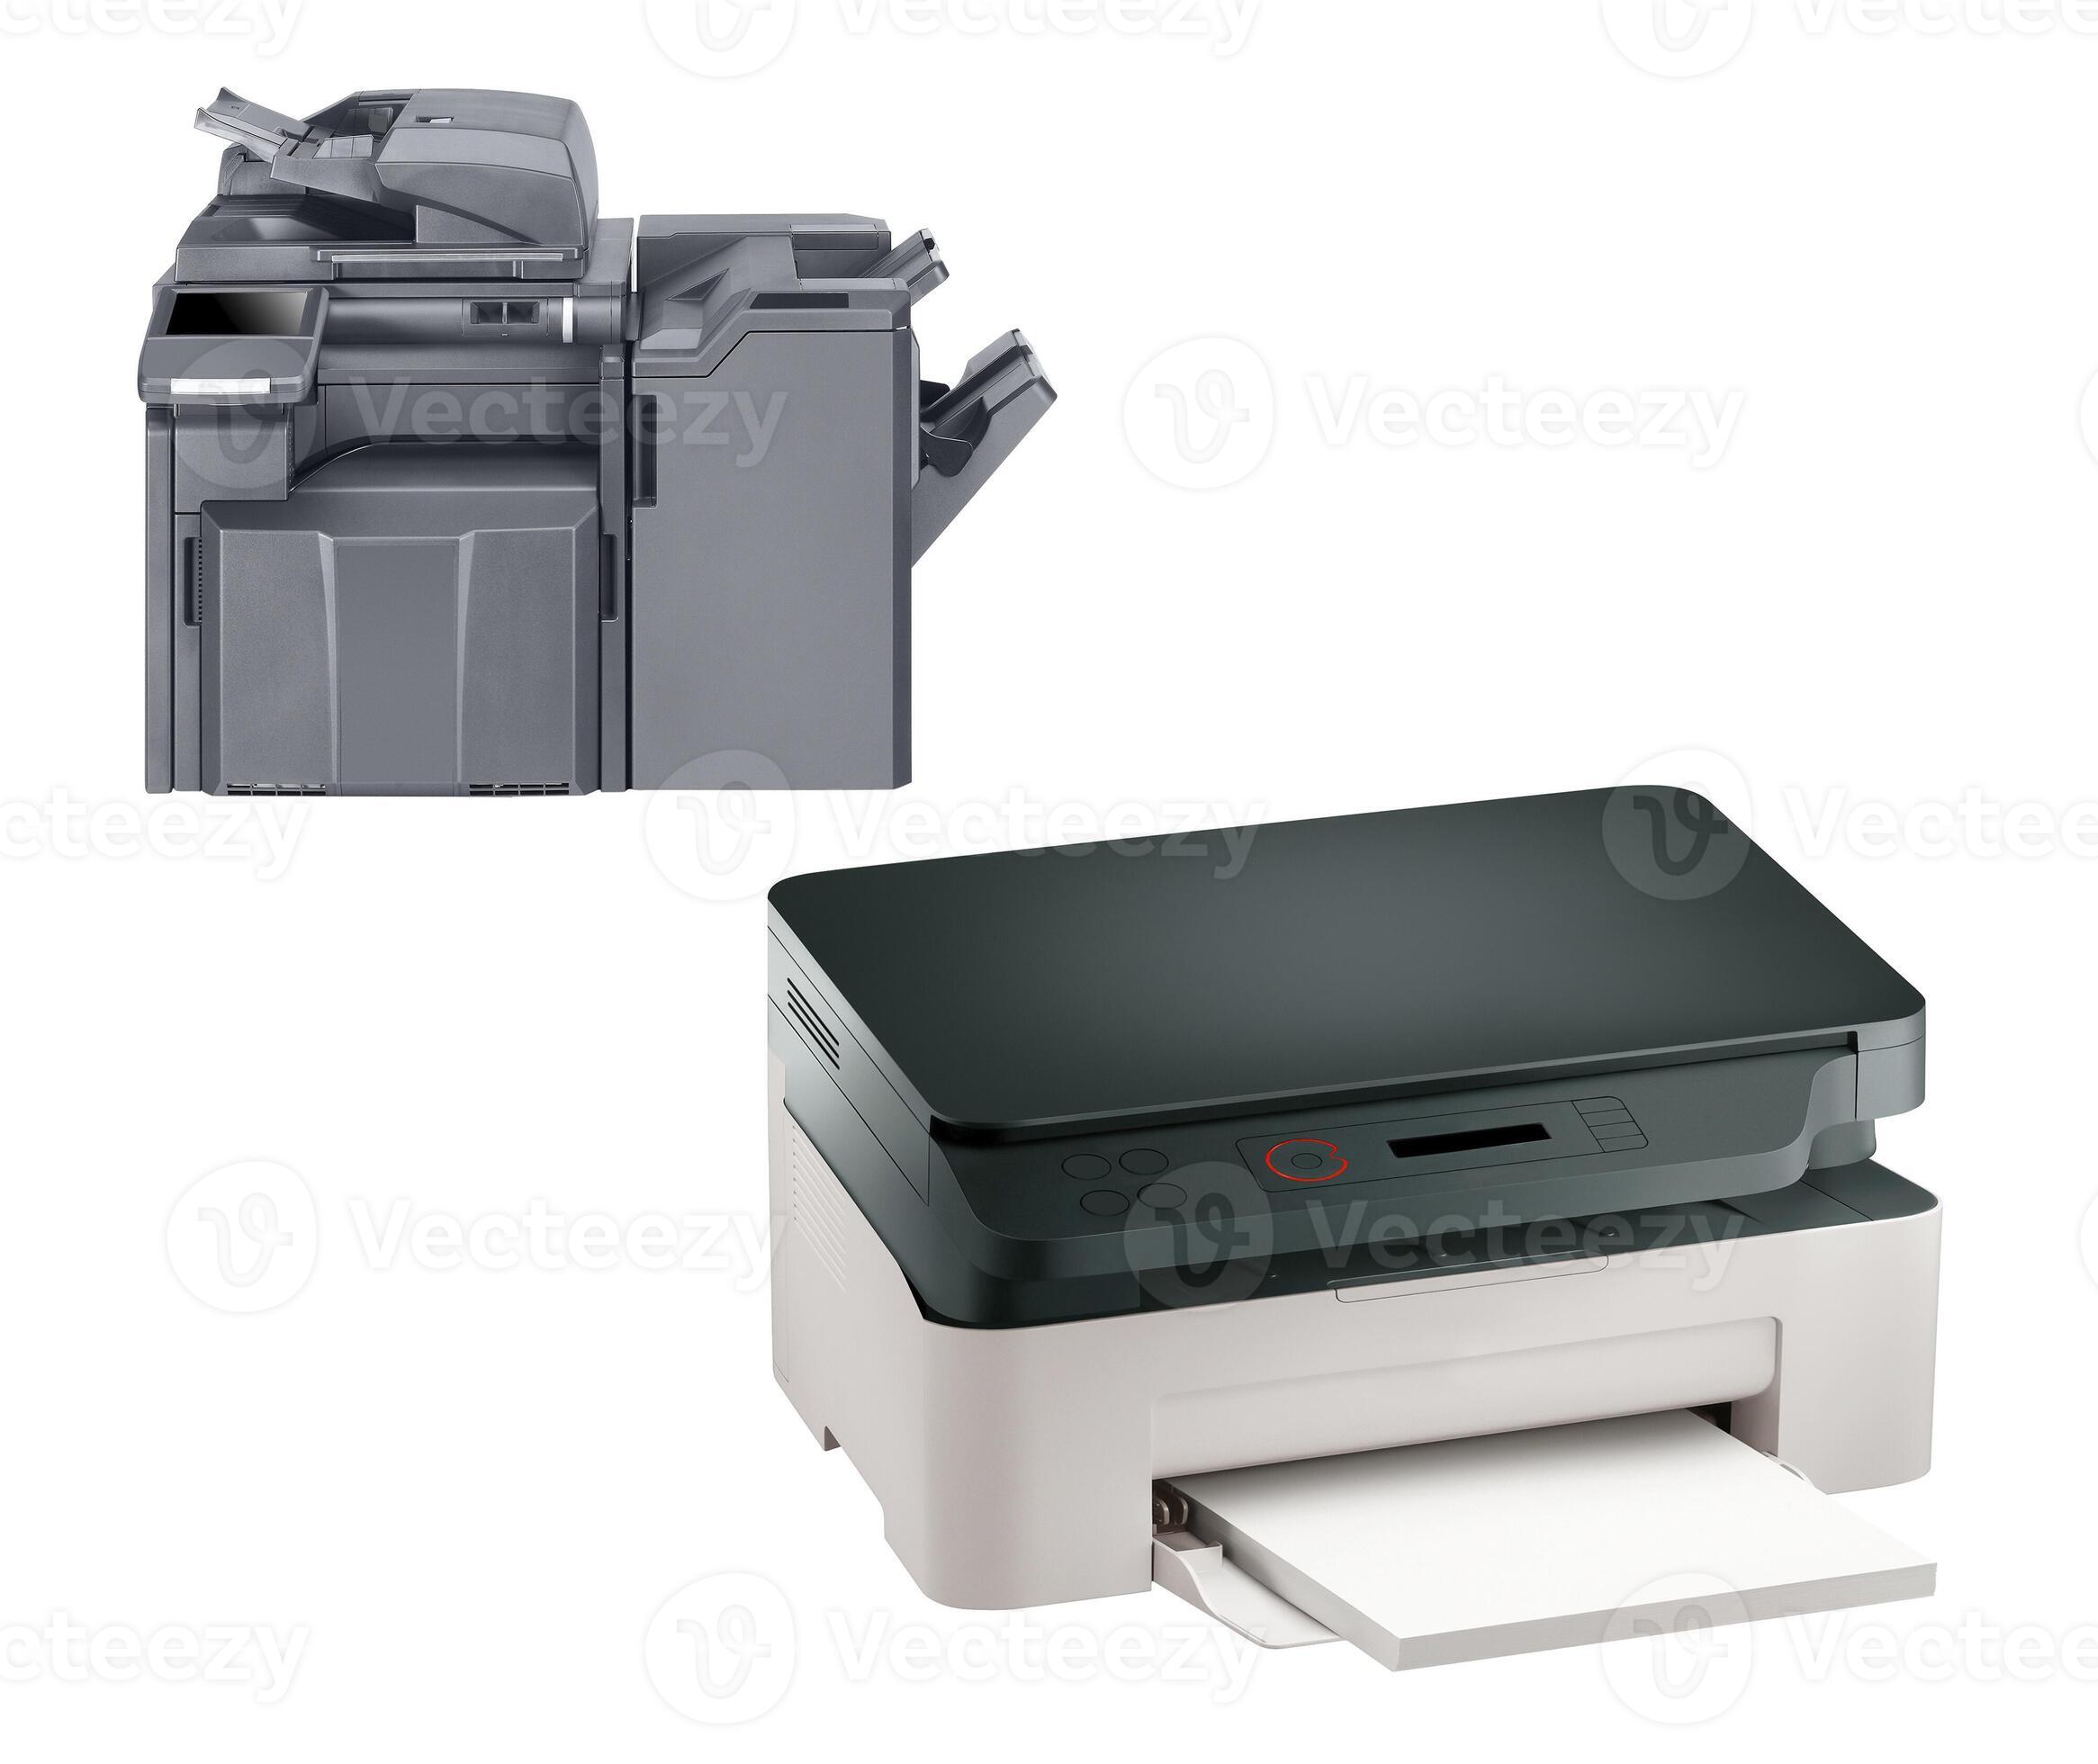 Impresora, Escáner, Copiadora Aislado En Fondo Blanco Fotos